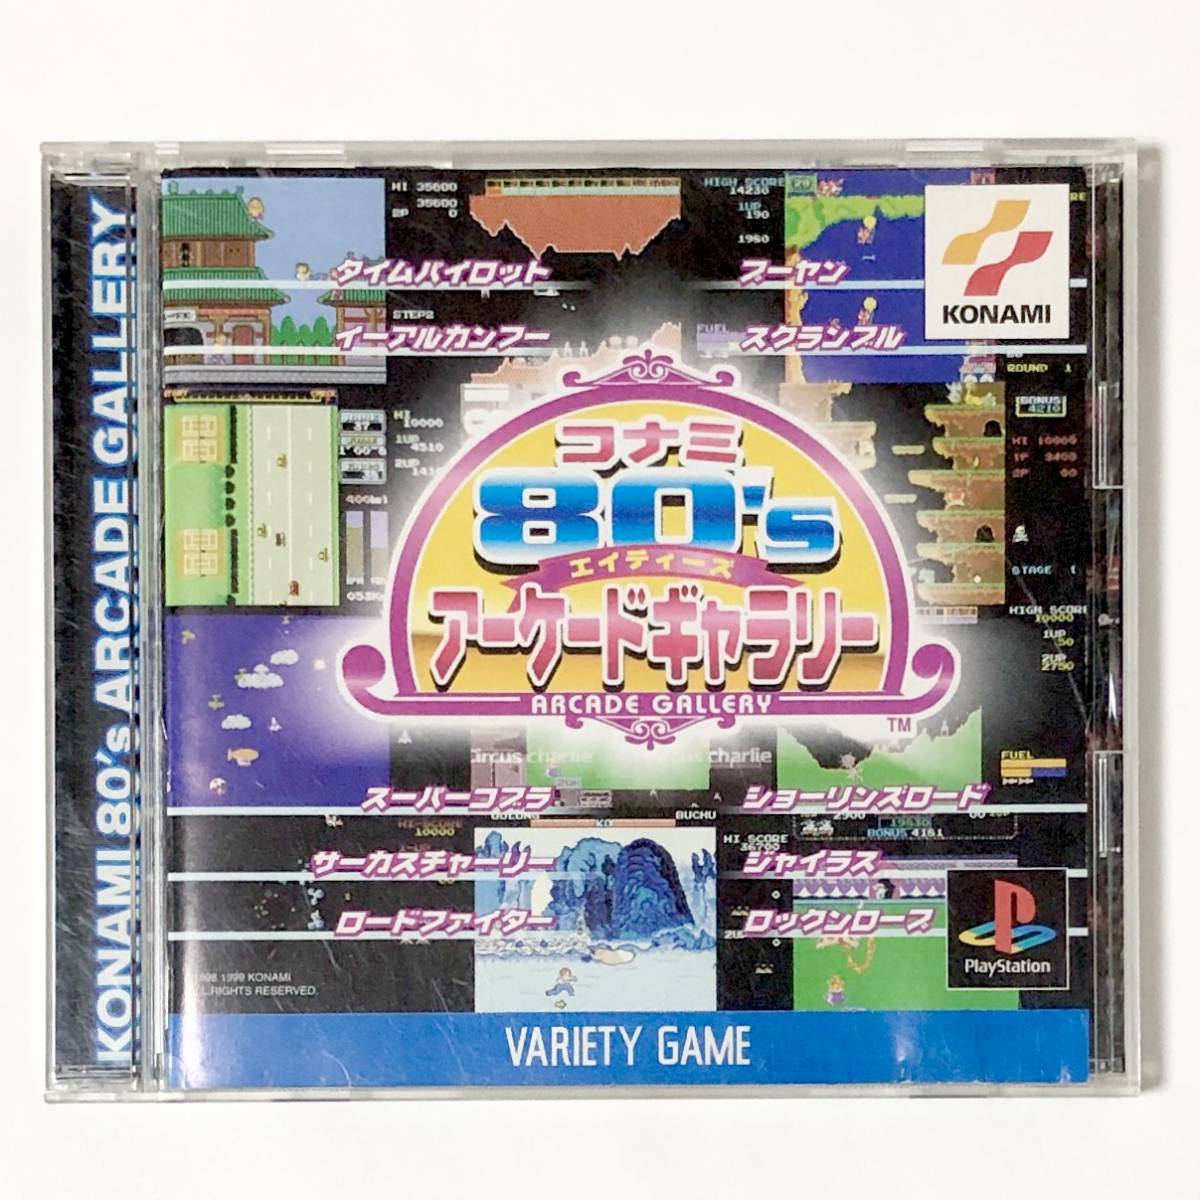 プレイステーション コナミ80’s アーケードギャラリー コナミ スクランブル 他 PlayStation Konami 80's Arcade Gallery CIB Tested